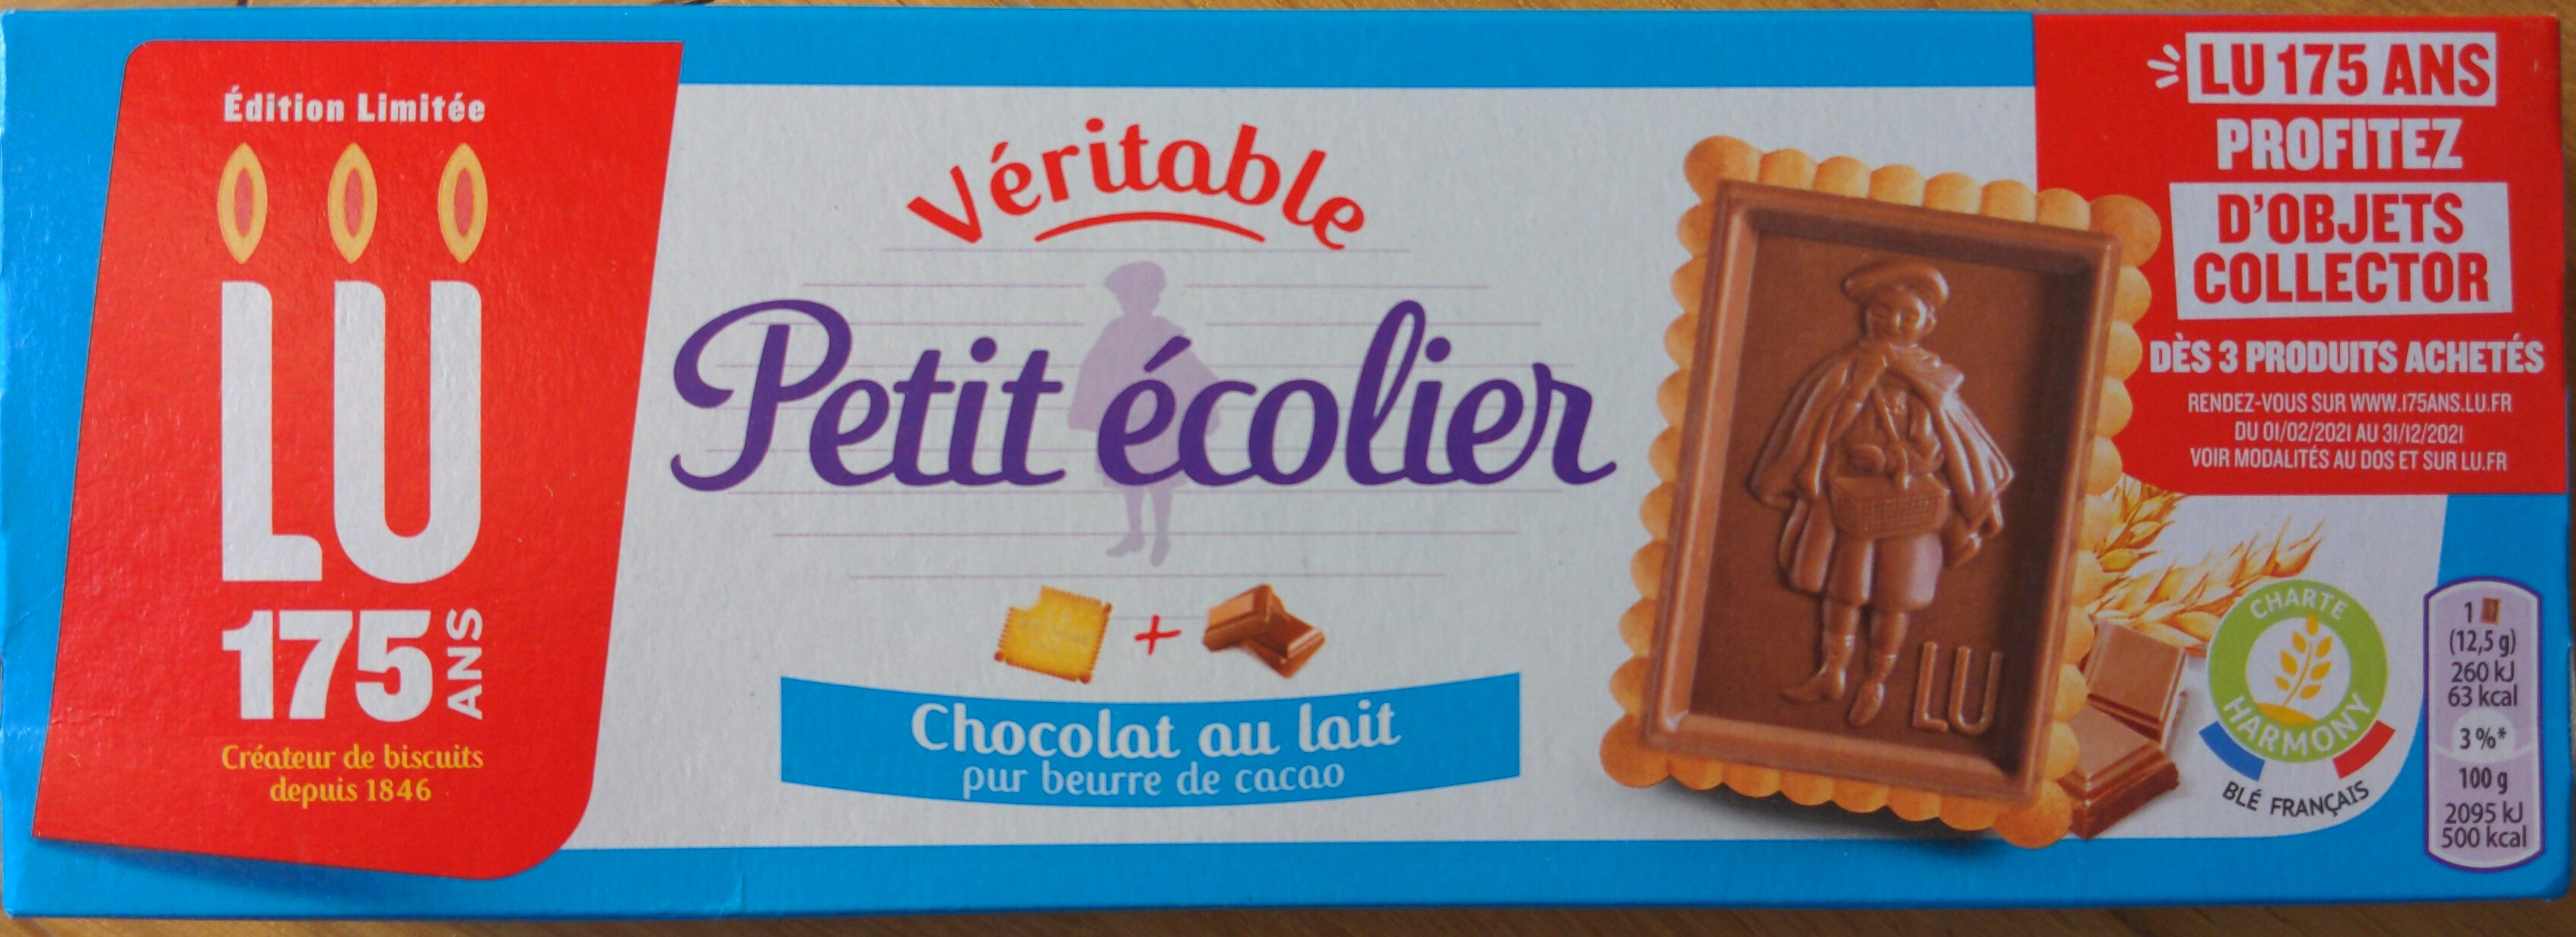 Véritable Petit Écolier Chocolat au Lait - Producte - fr